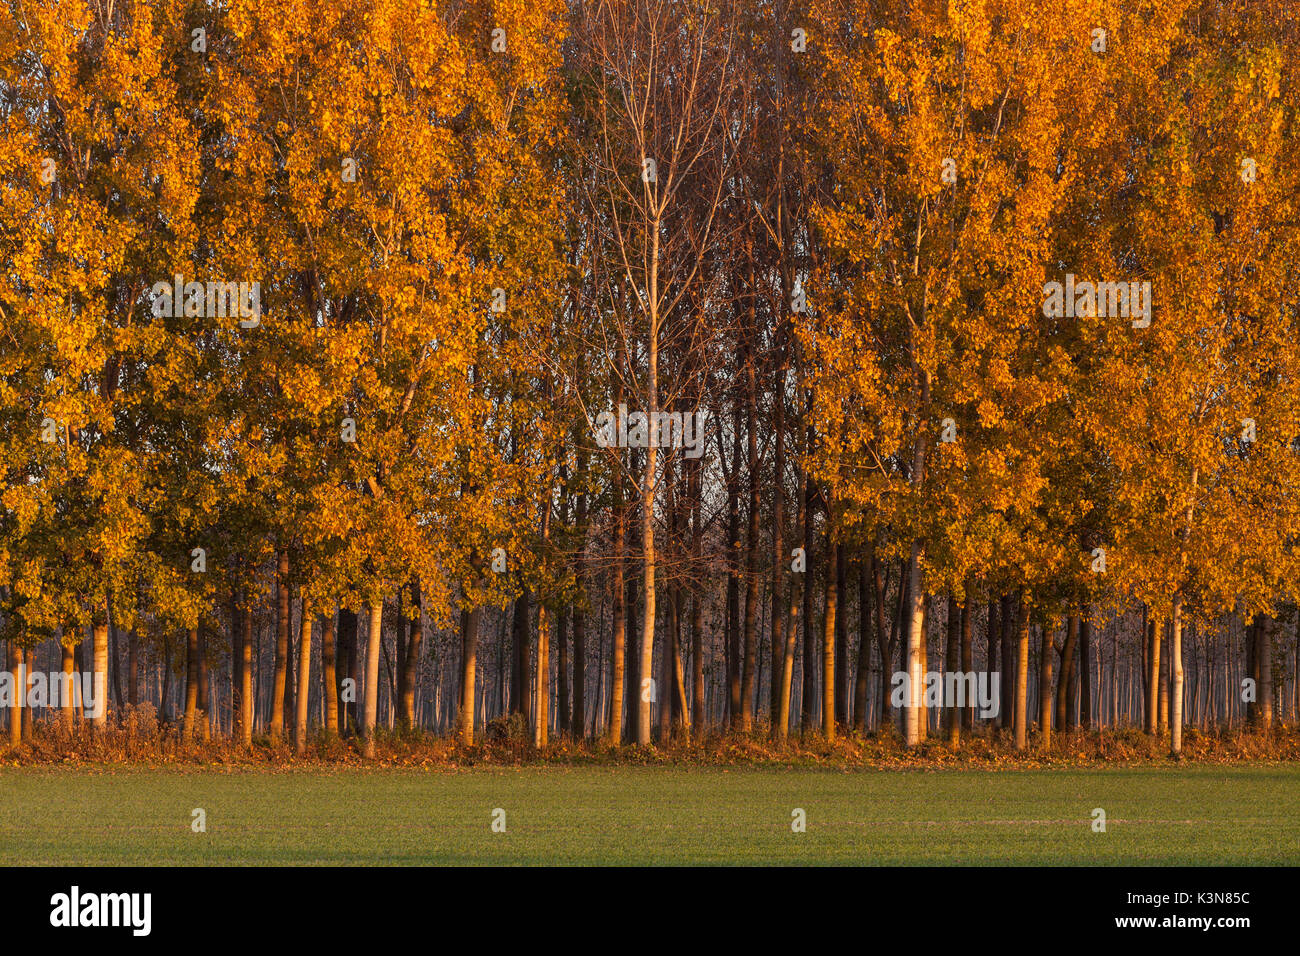 Caselle Landi, provincia di Lodi, Lombardia, Italia. Un bosco di pioppi in autunno. Foto Stock